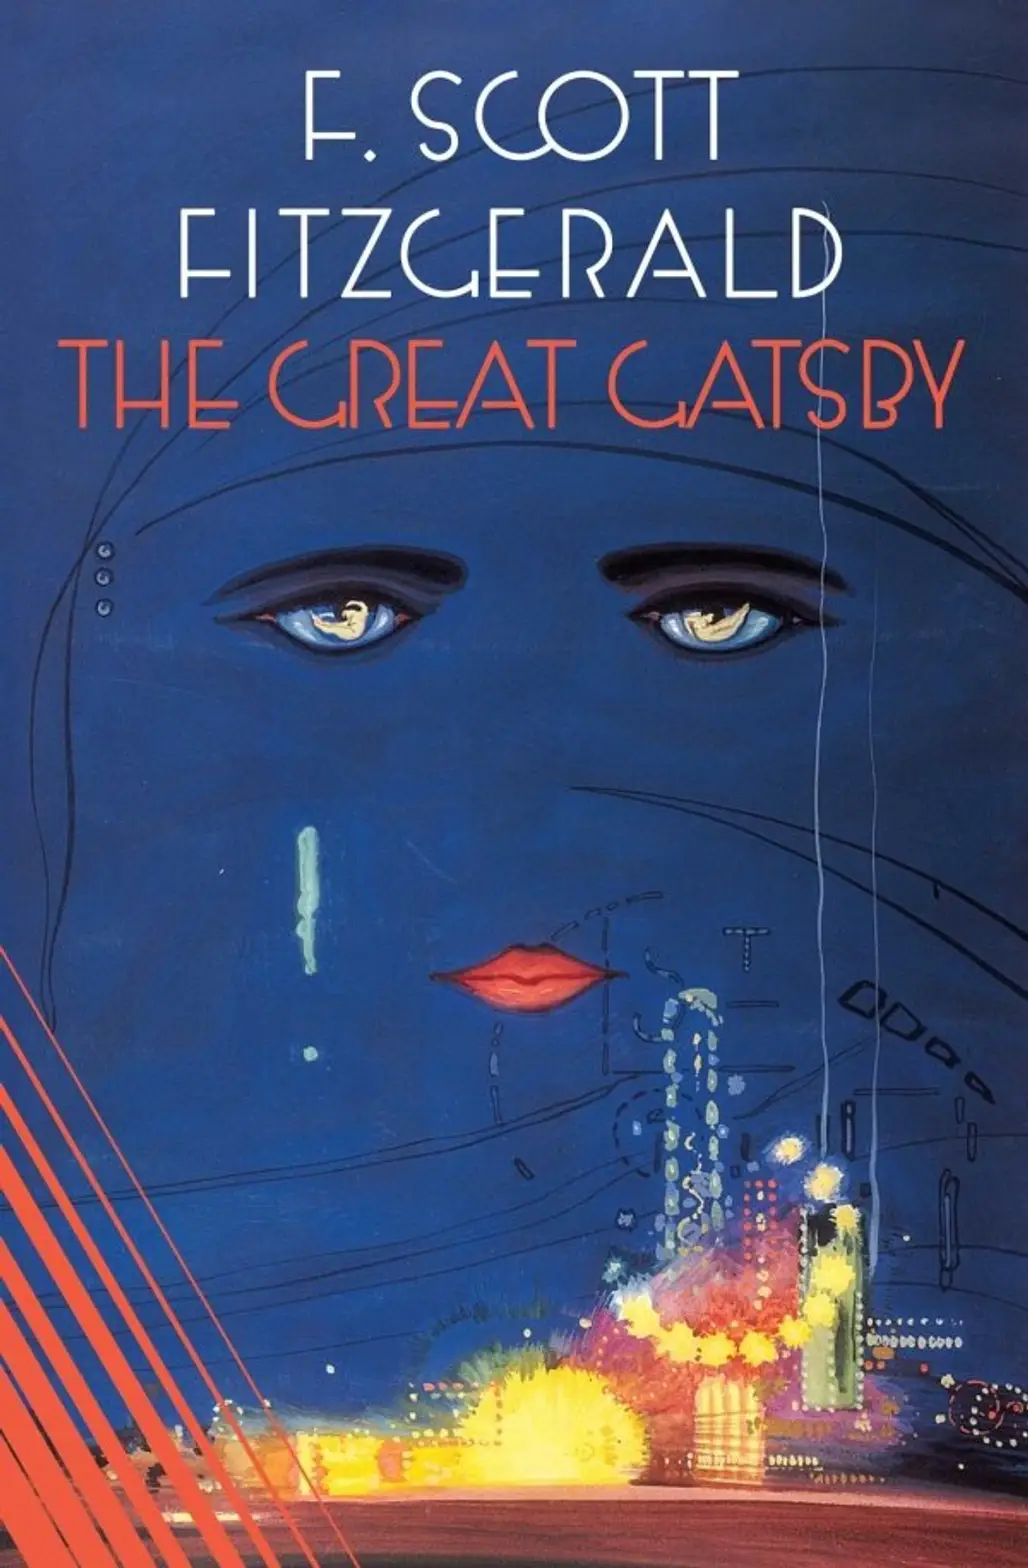 The Great Gatsby- F. Scott Fitzgerald